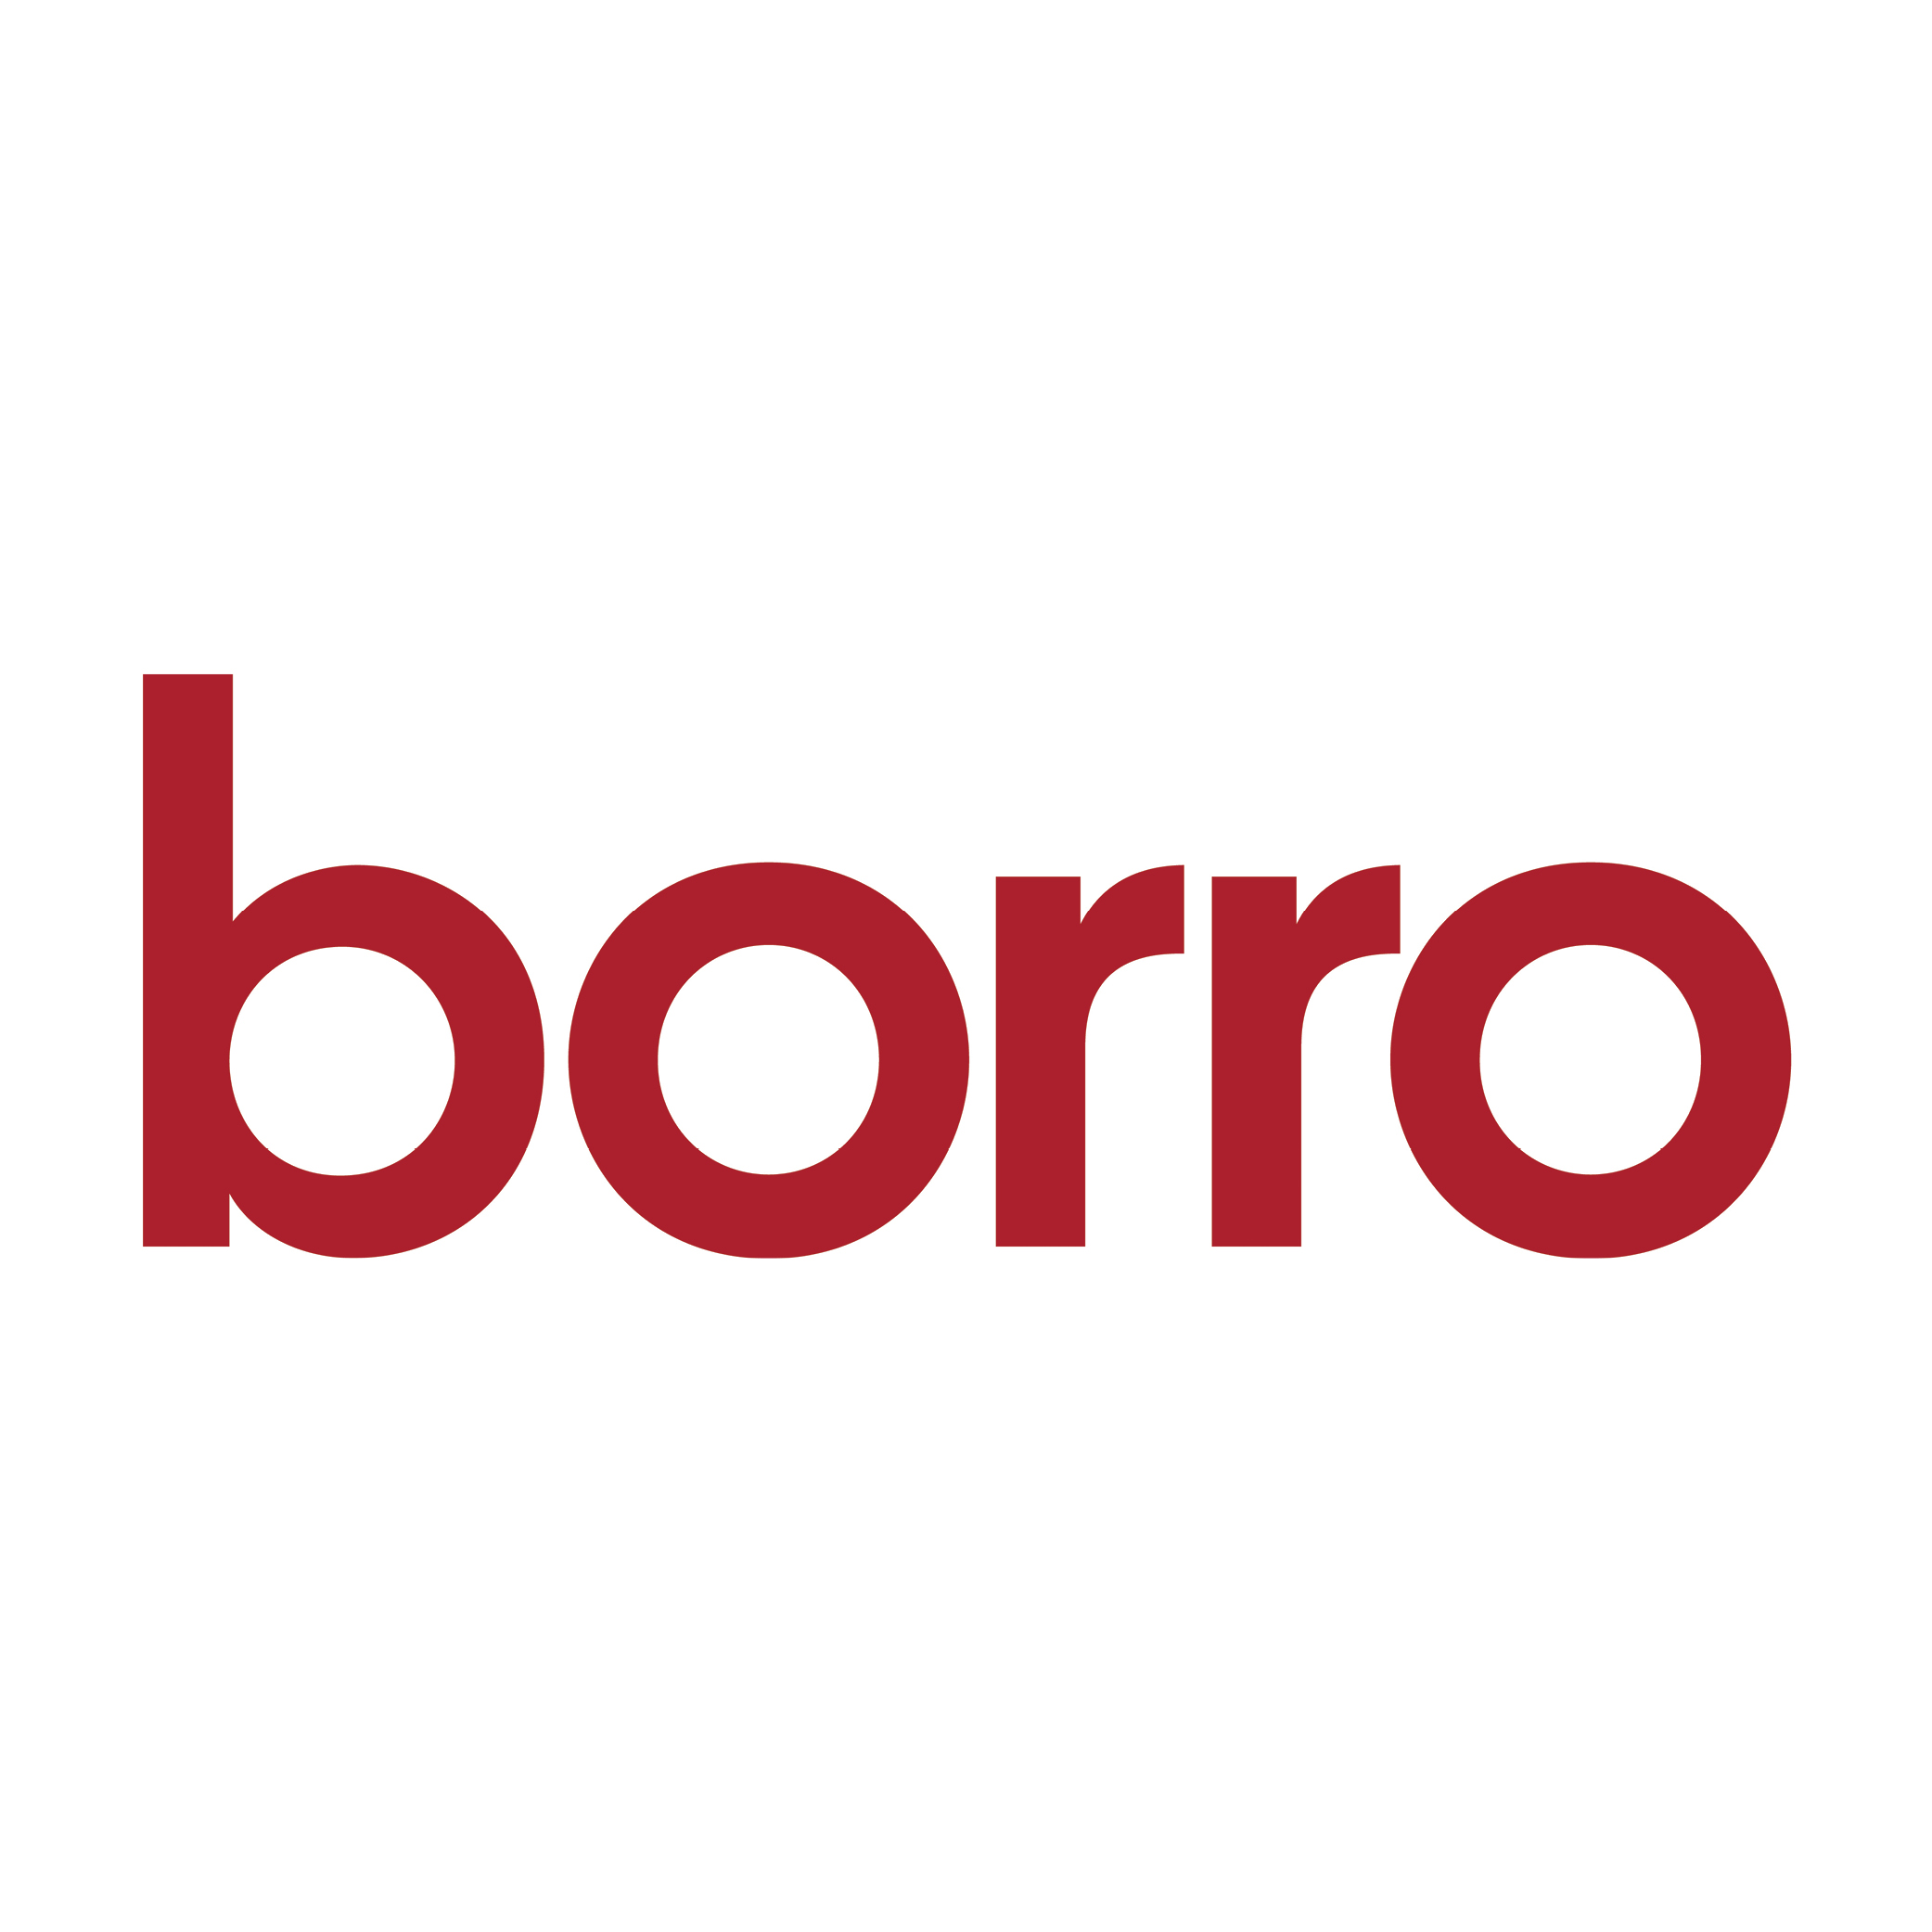 Borro